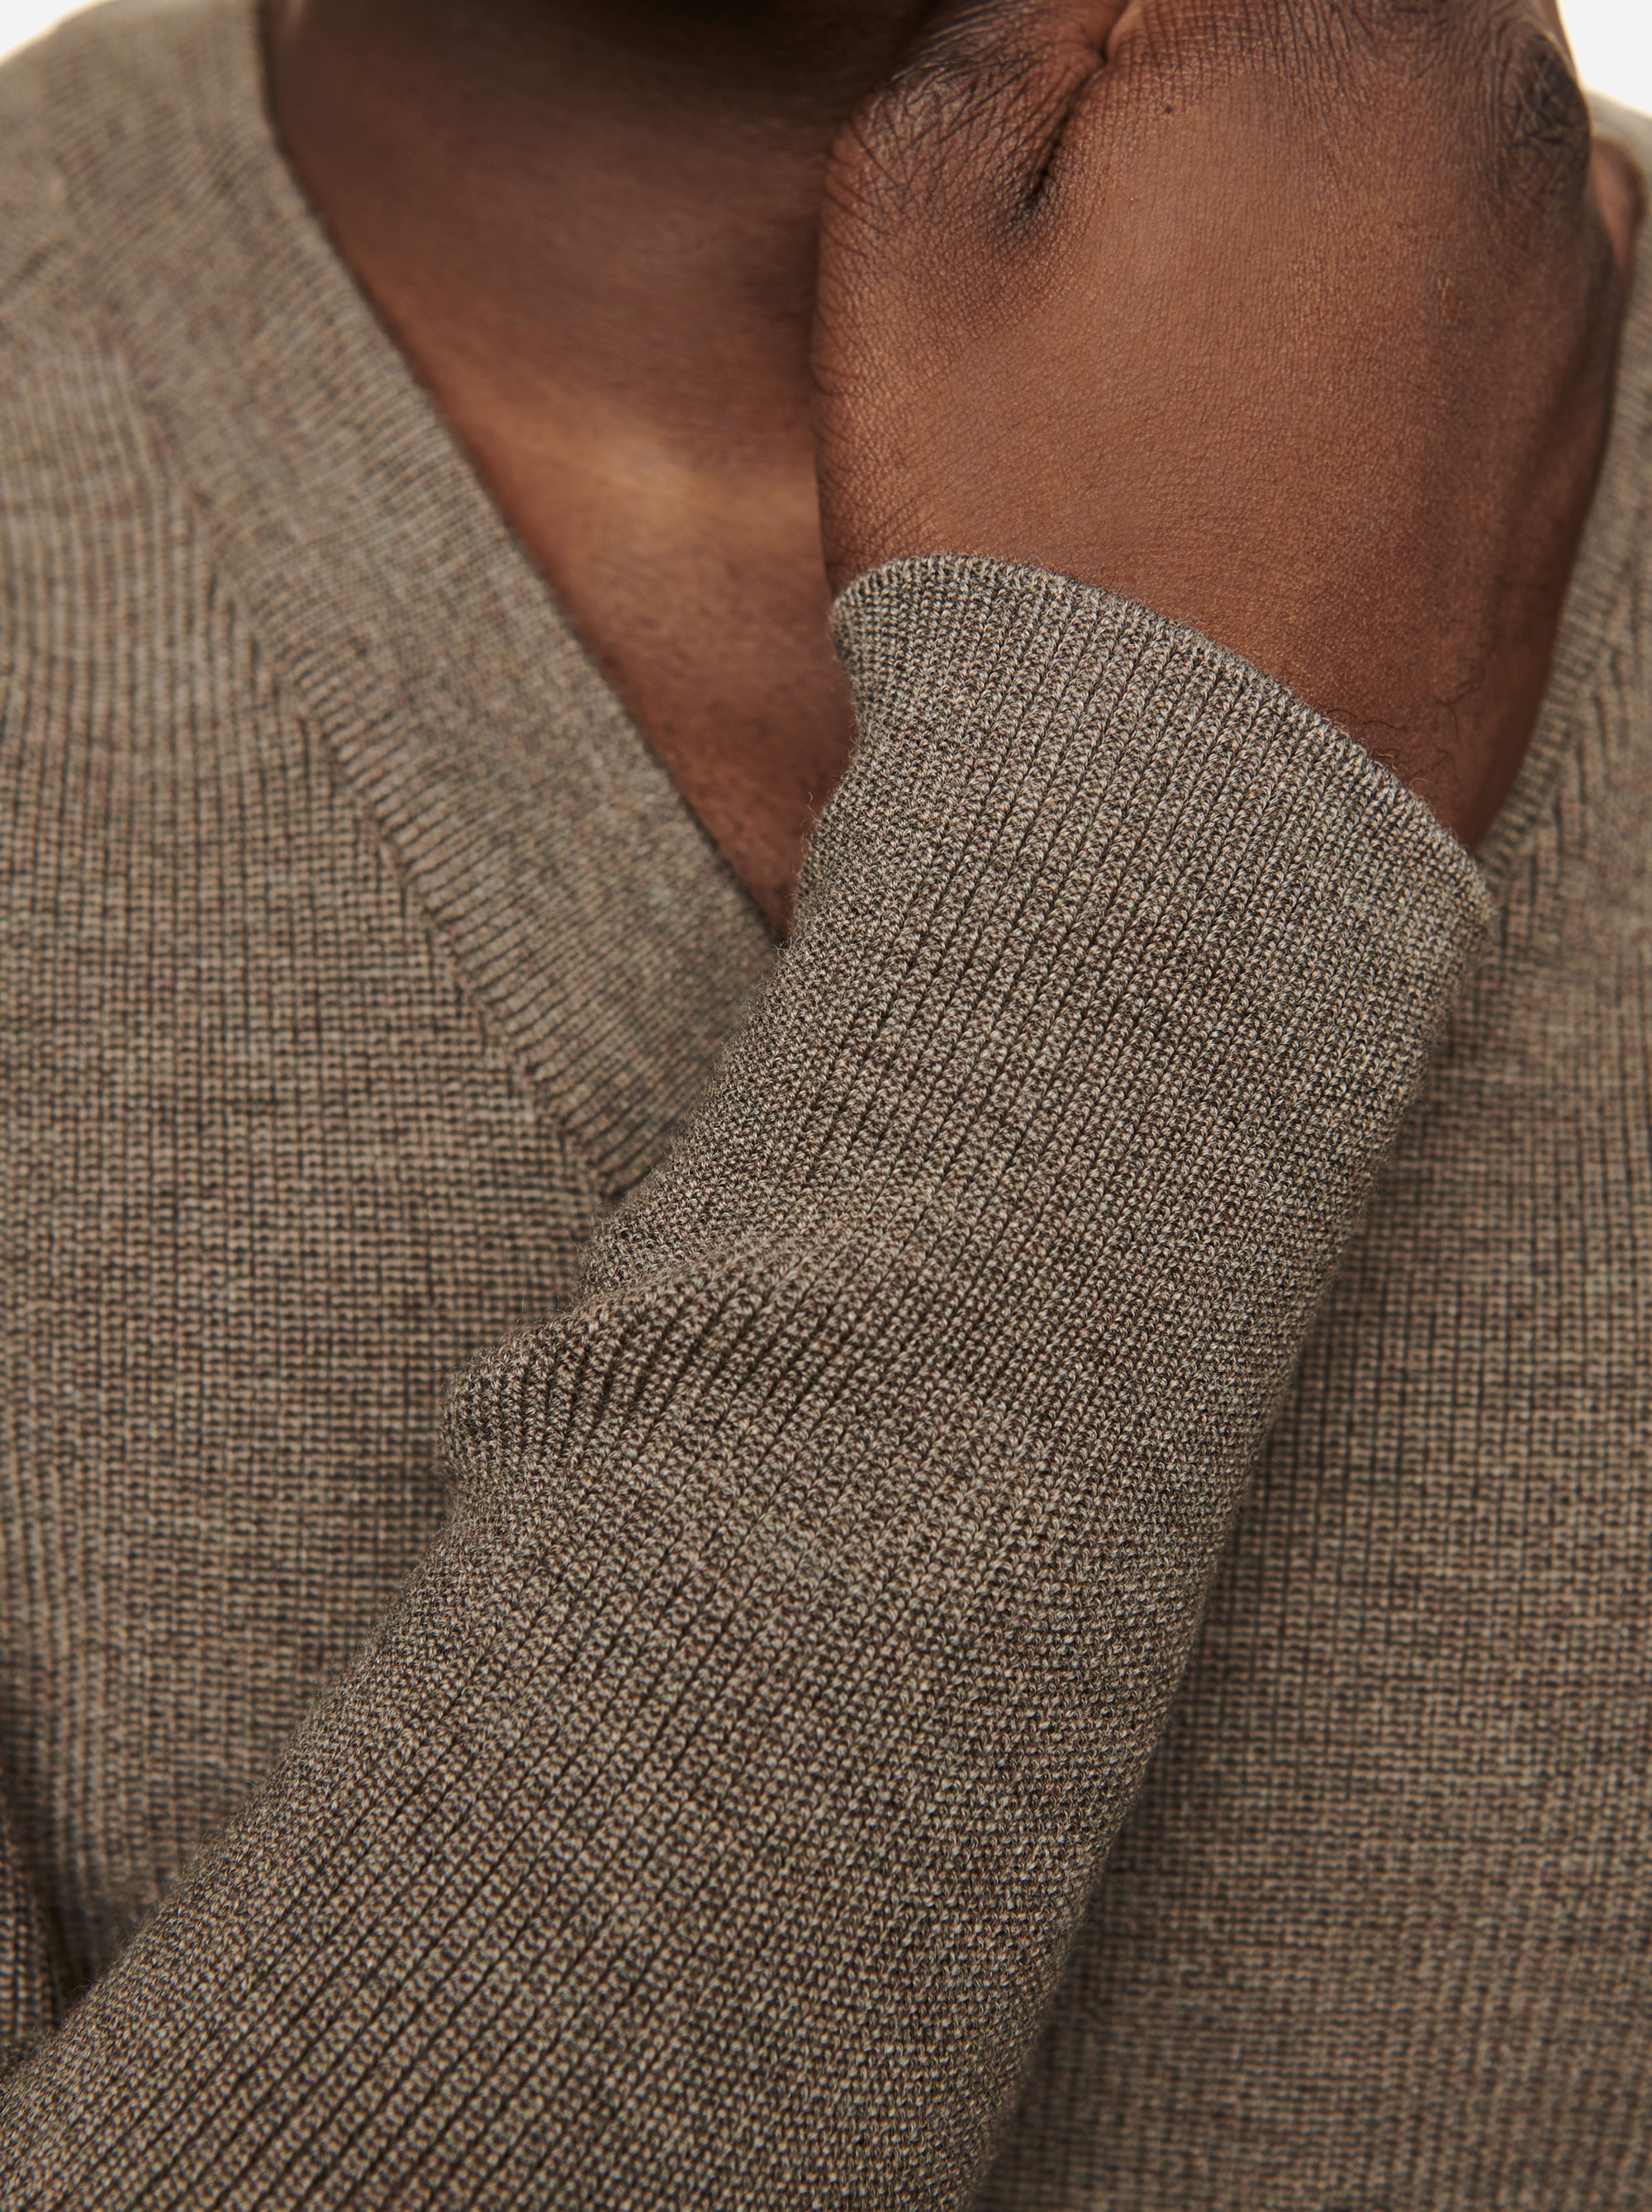 Teym - V-Neck - The Merino Sweater - Men - Grey - 2